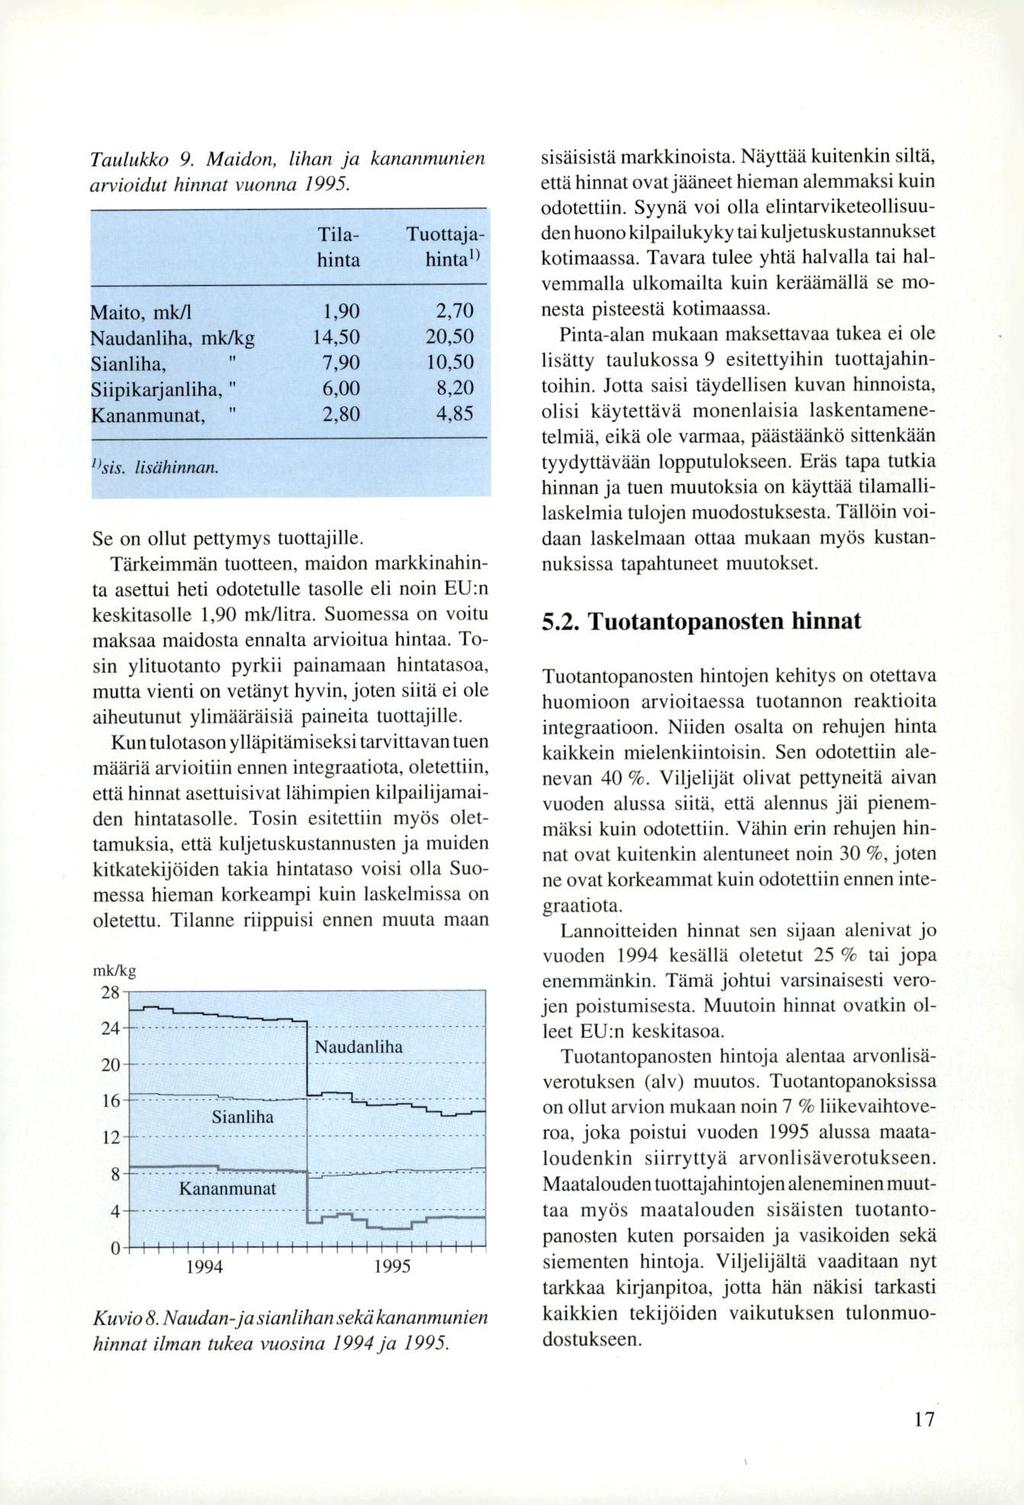 Taulukko 9. Maidon, lihan ja kananmunien arvioidut hinnat vuonna 1995.